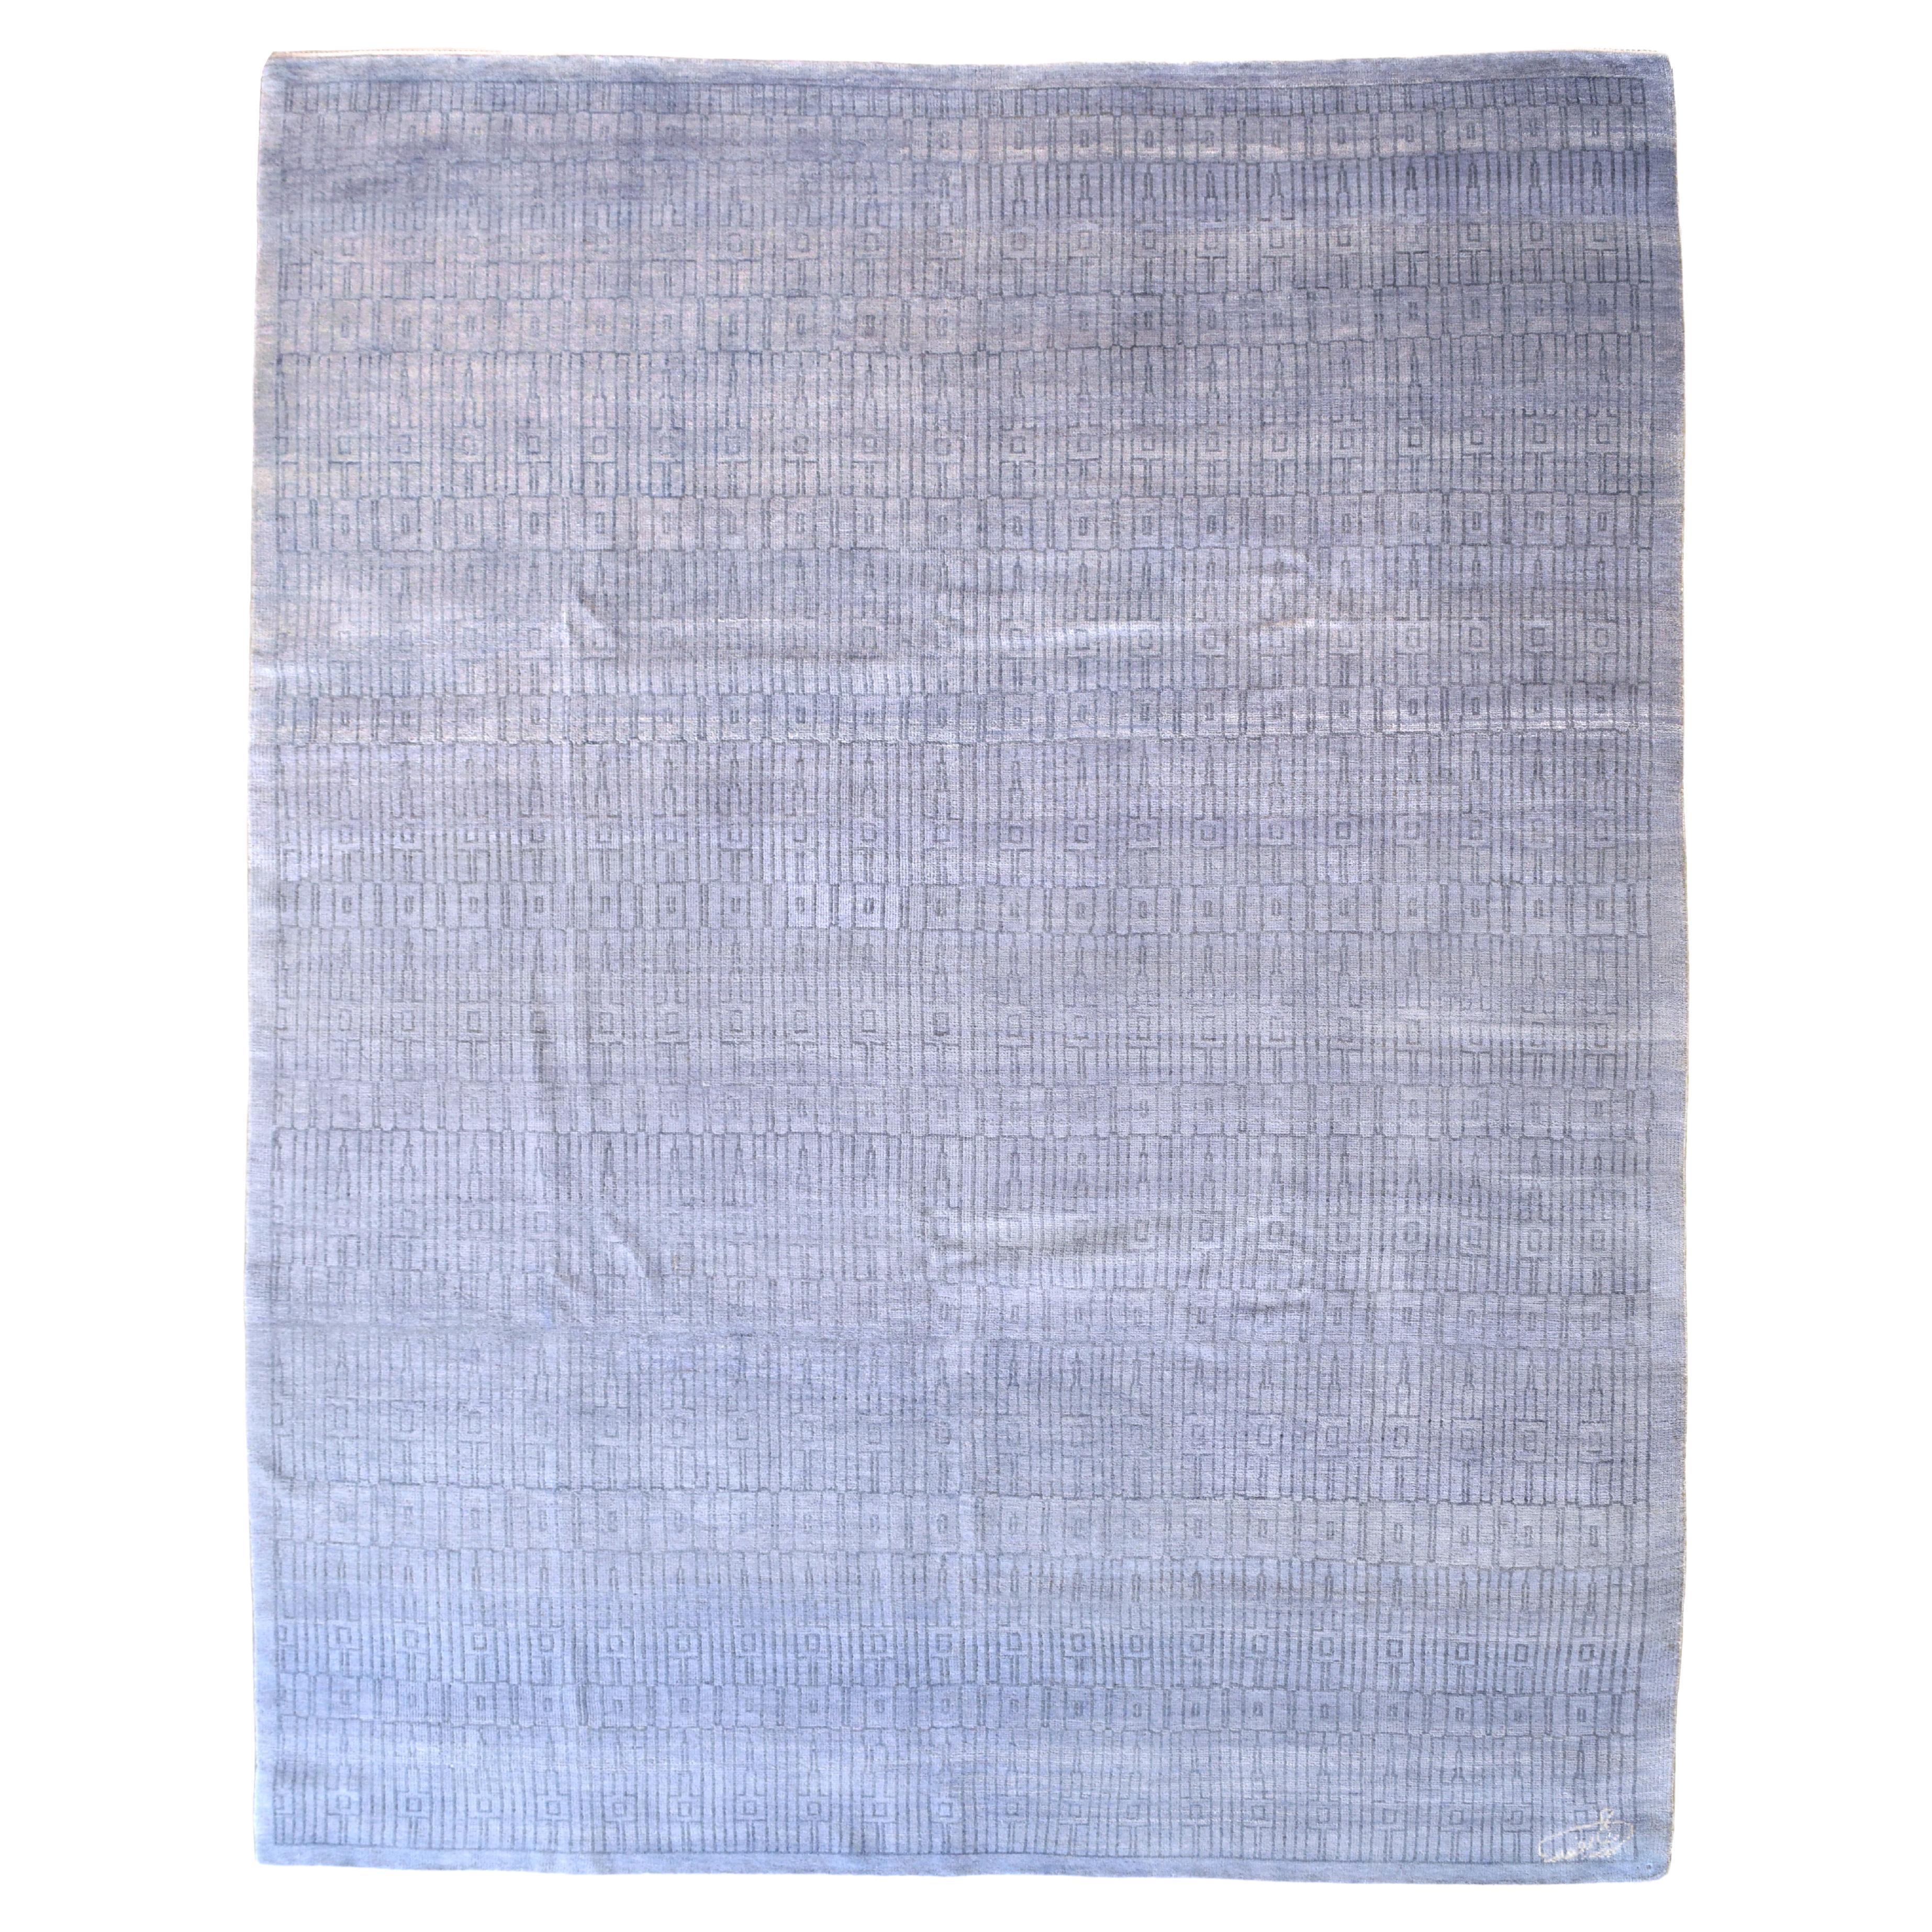 Blauer und grauer geometrischer Teppich „Excelsior“ aus reiner Wolle in Blau- und Grautönen auf Tone, 8x10